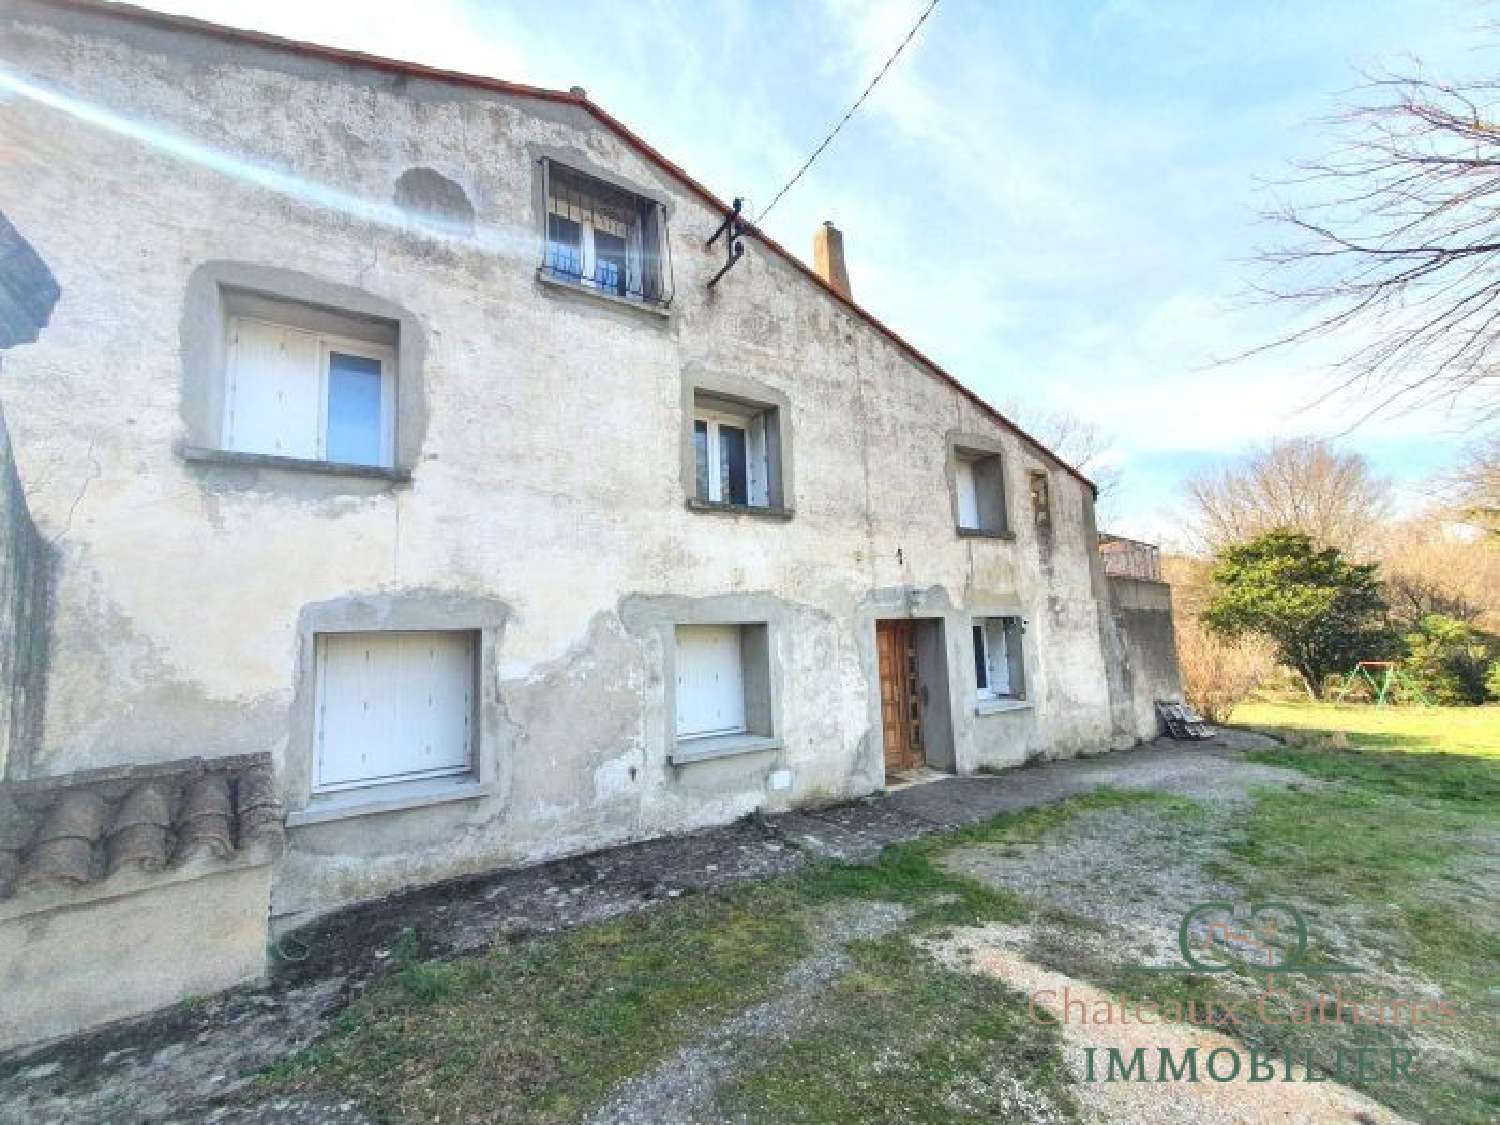  à vendre maison Saint Paul de Fenouillet Pyrénées-Orientales 2